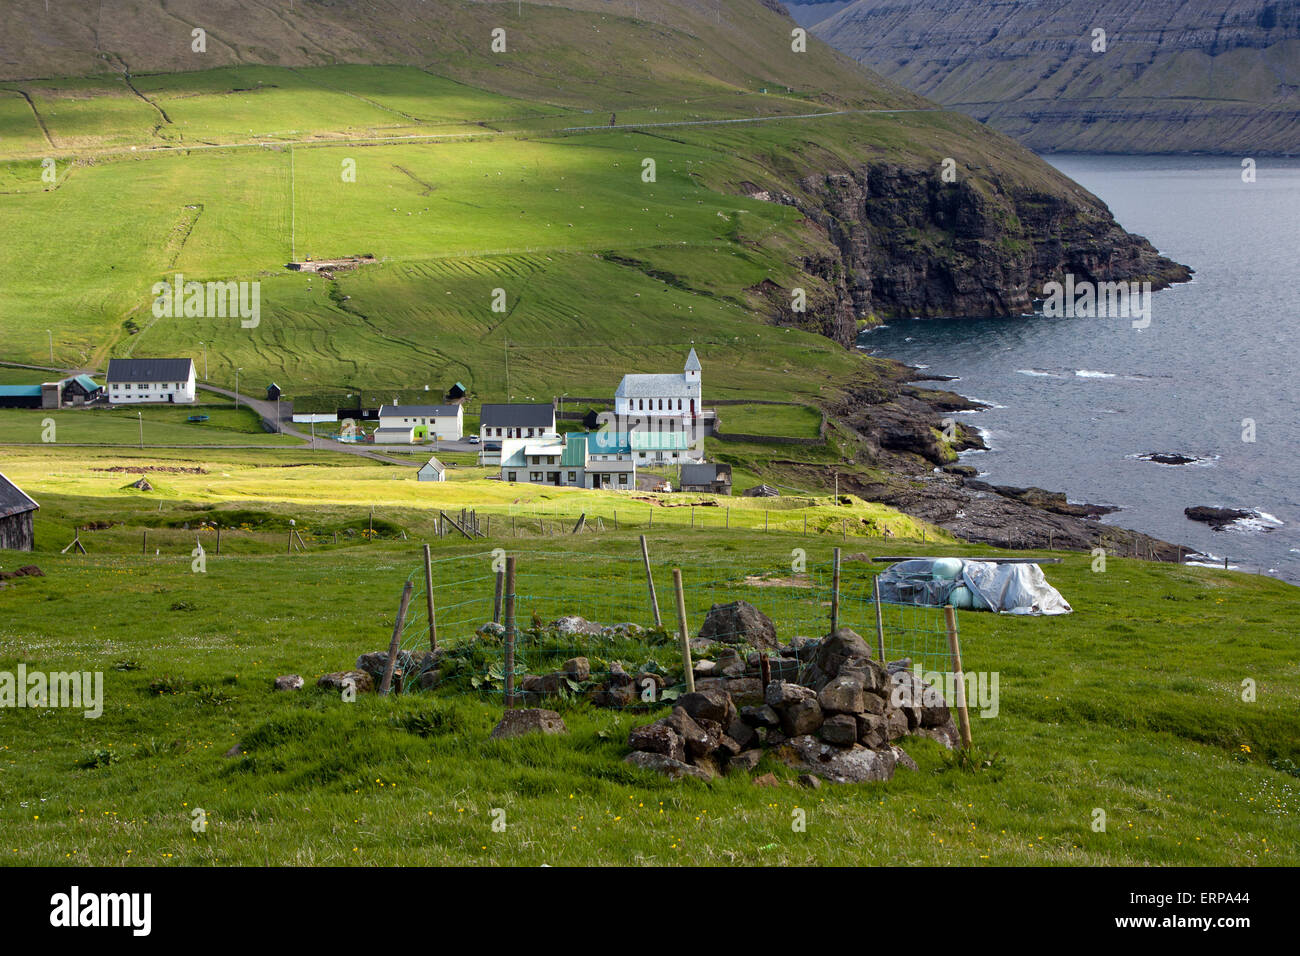 Faroe Islands, village of Vidareidi Stock Photo